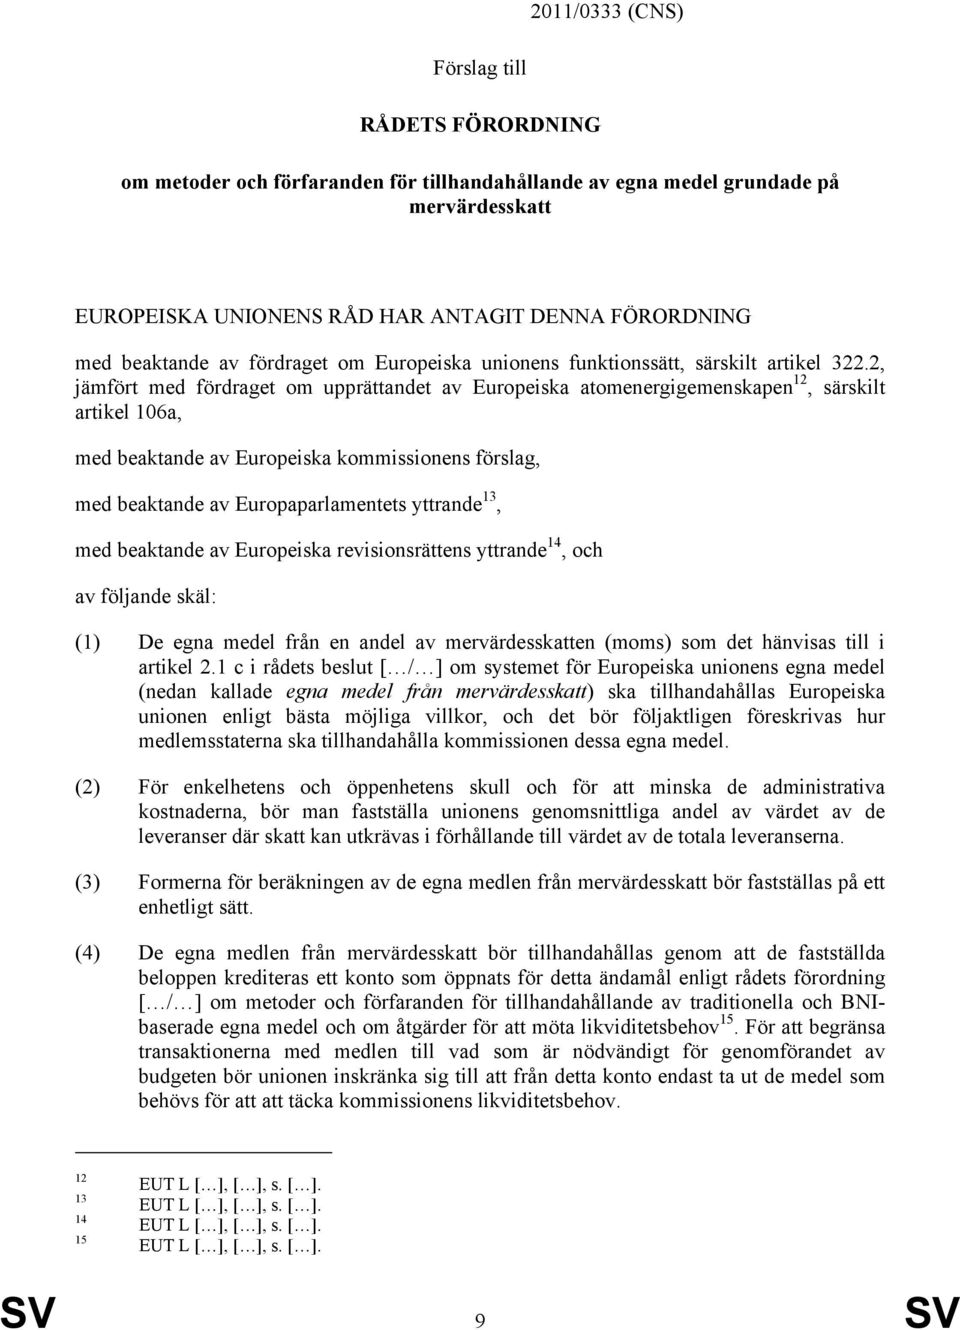 2, jämfört med fördraget om upprättandet av Europeiska atomenergigemenskapen 12, särskilt artikel 106a, med beaktande av Europeiska kommissionens förslag, med beaktande av Europaparlamentets yttrande